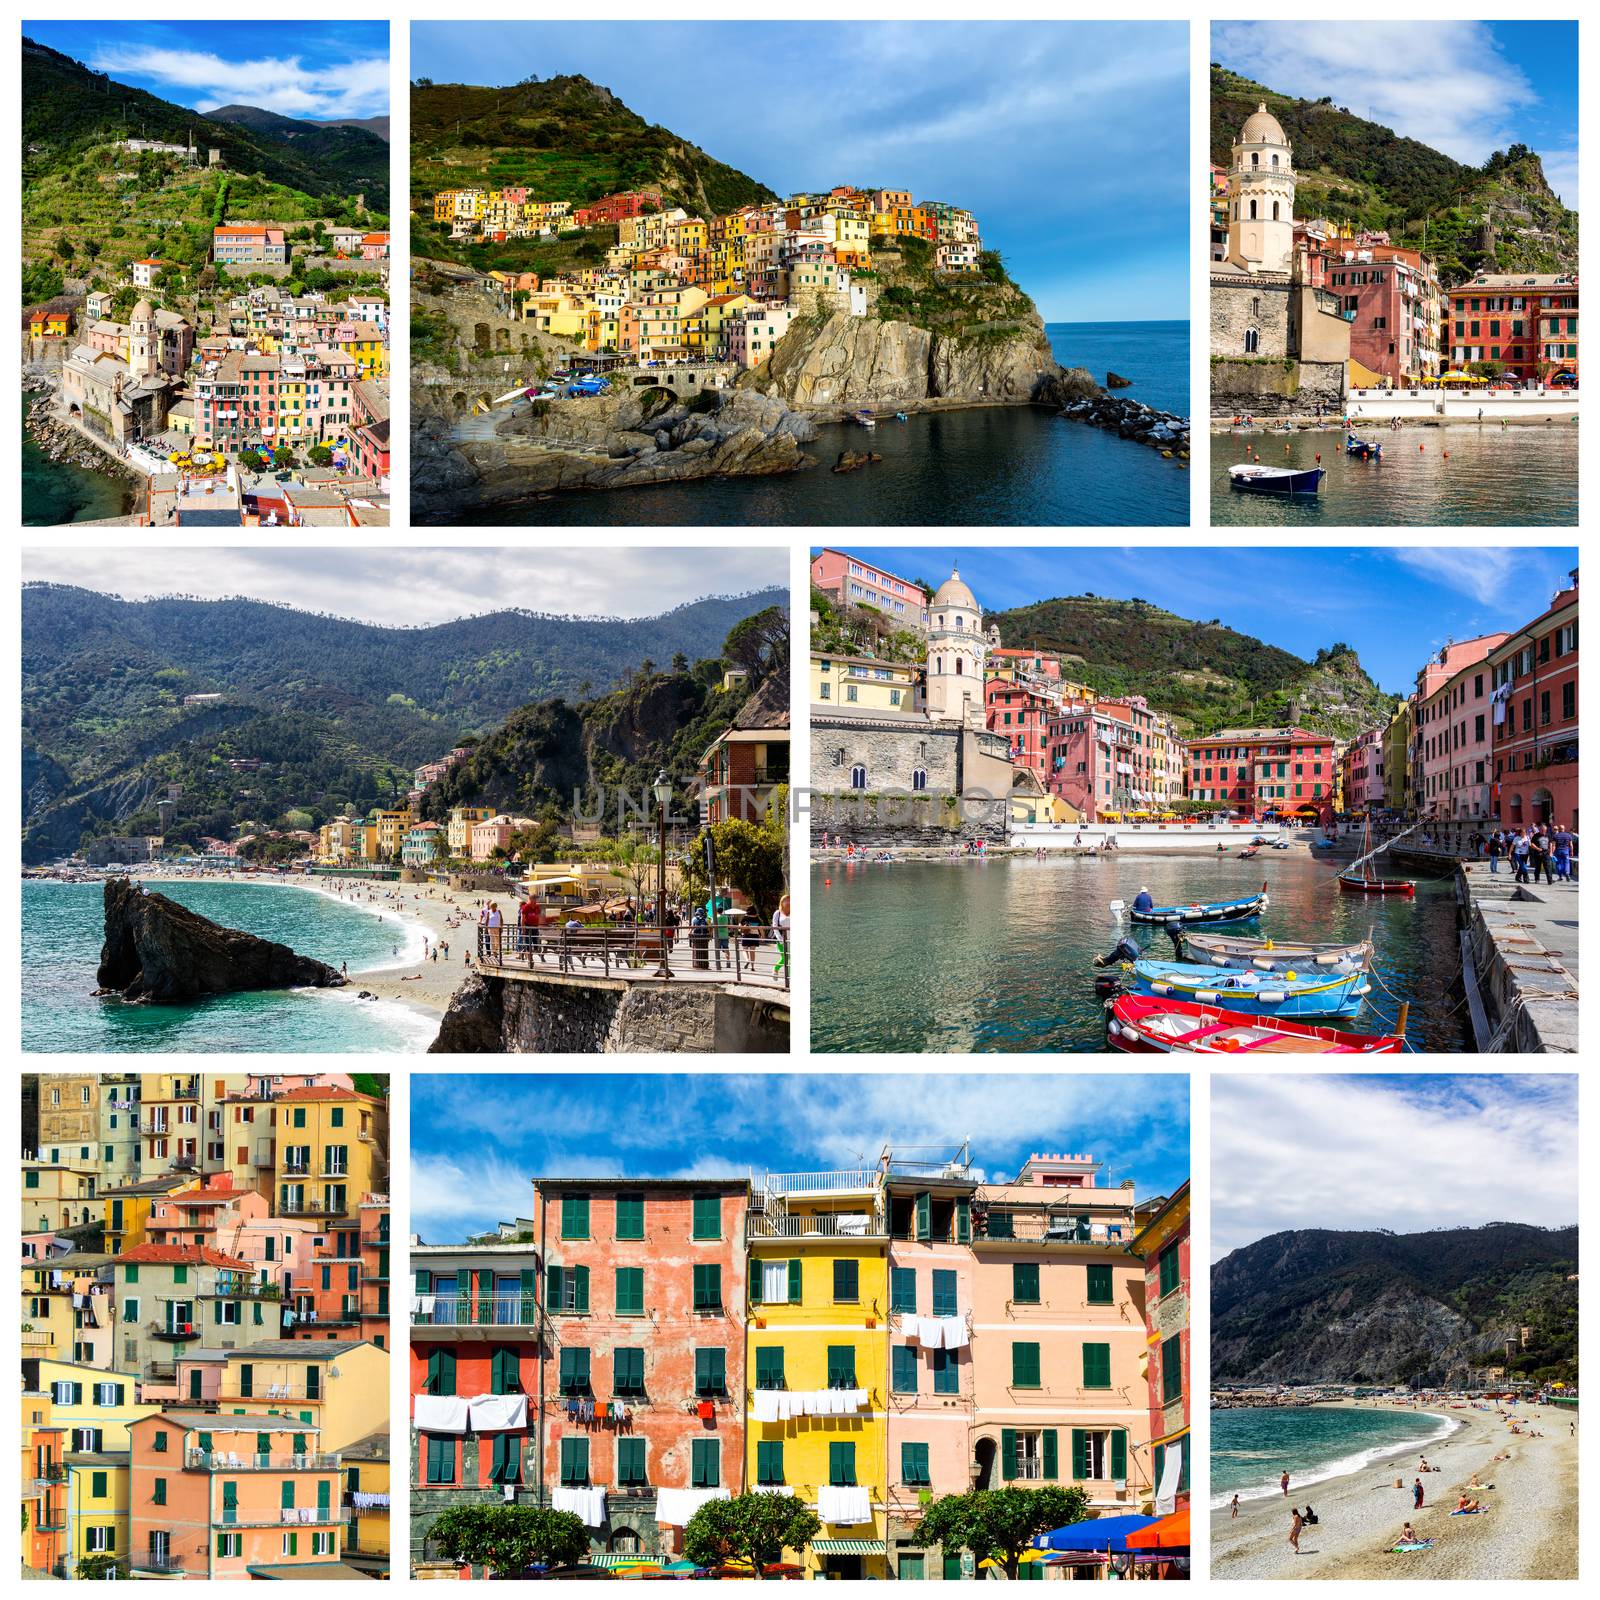 Collage of Cinque Terre photos in Italy (Vernazza, Manarola, Mon by DaLiu